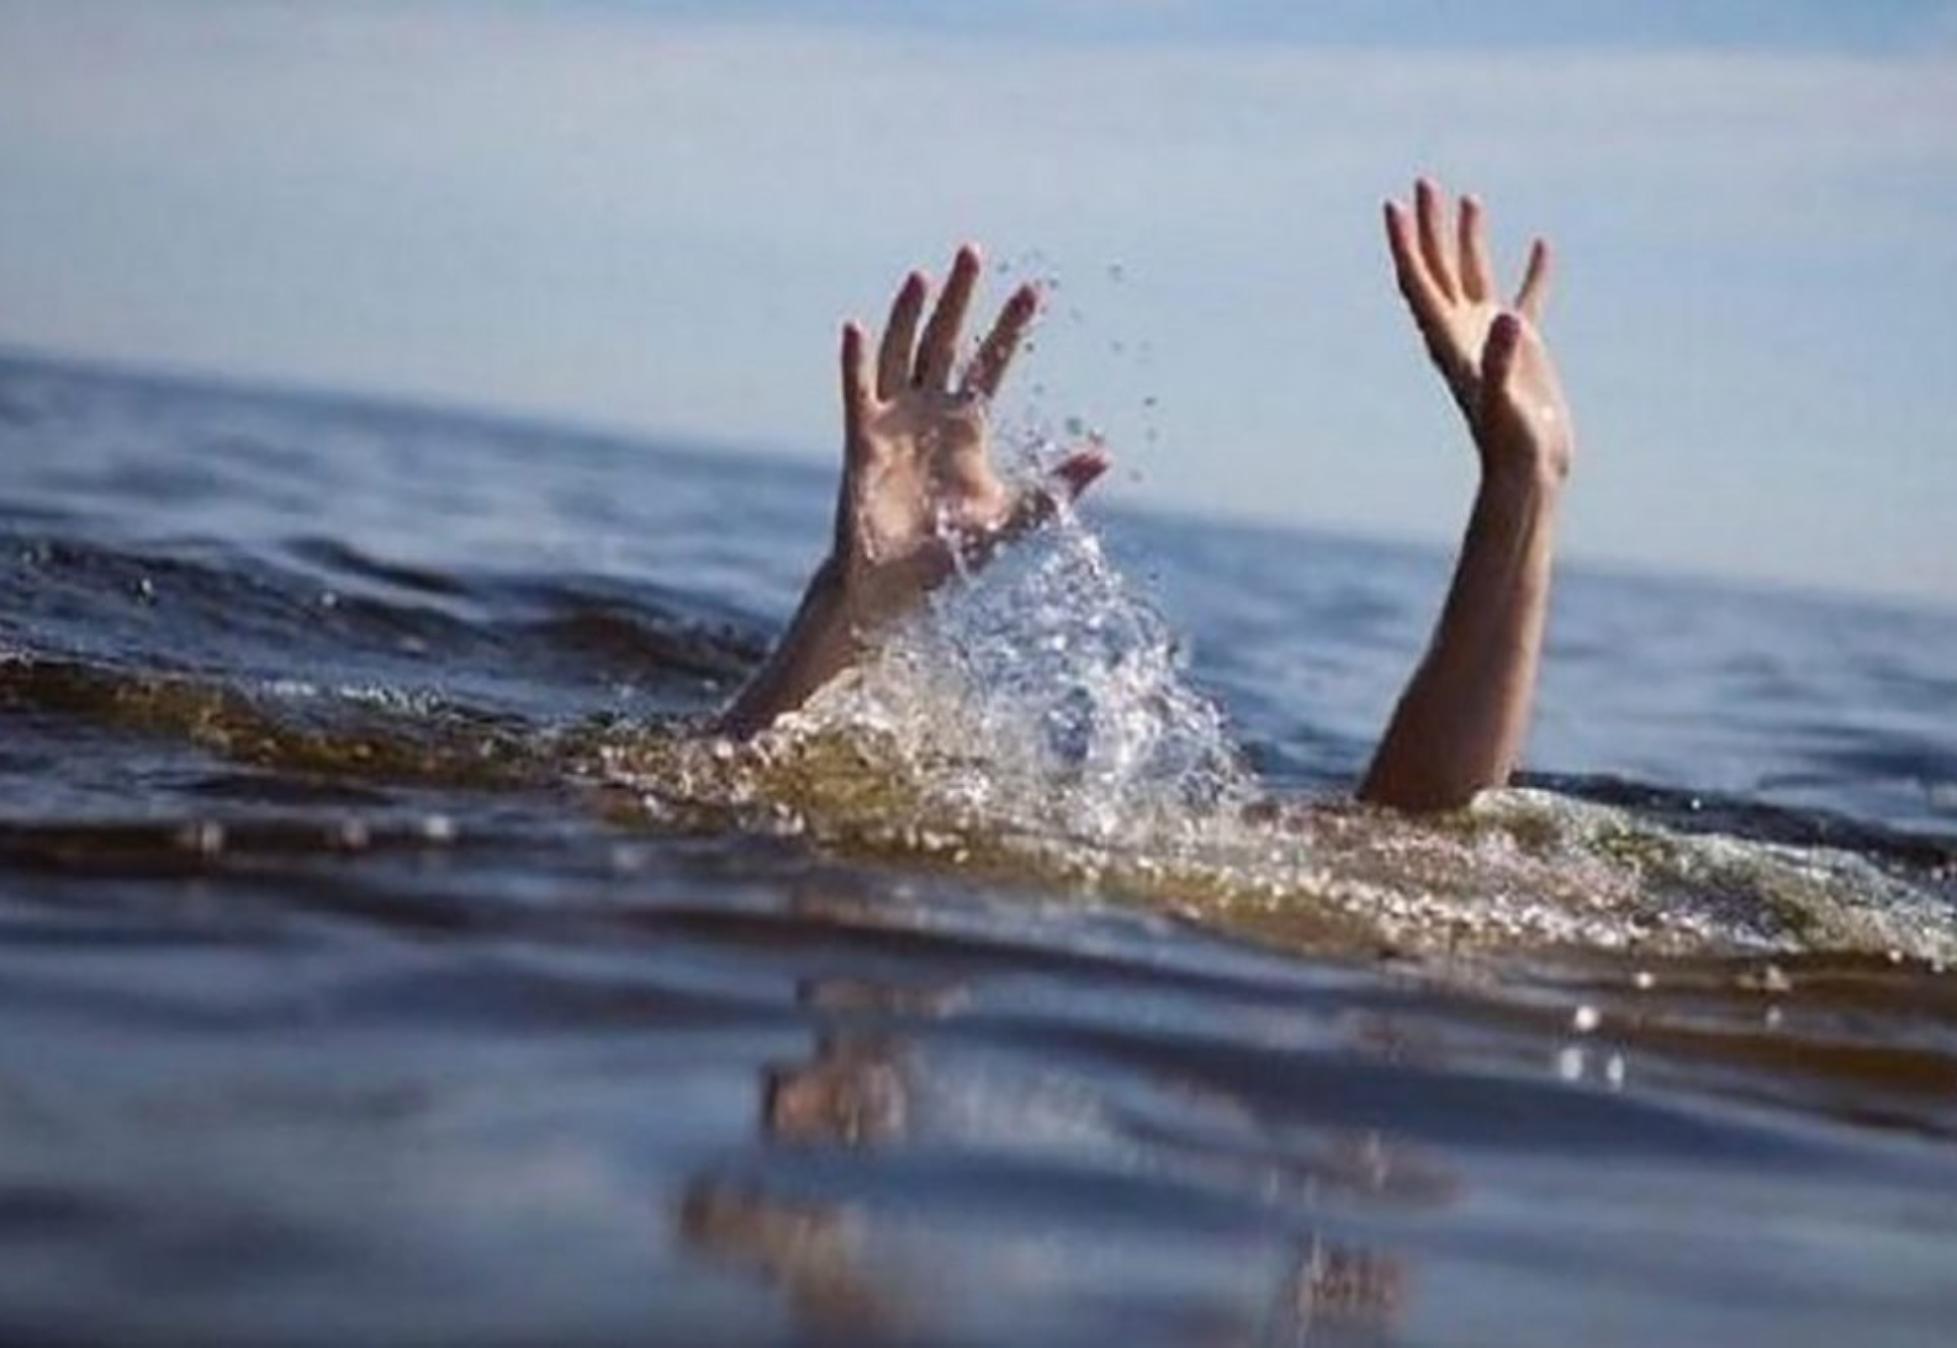 Χαλκίδα – Ροδιές: Αρχιμανδρίτης εντοπίστηκε νεκρός στην θάλασσα